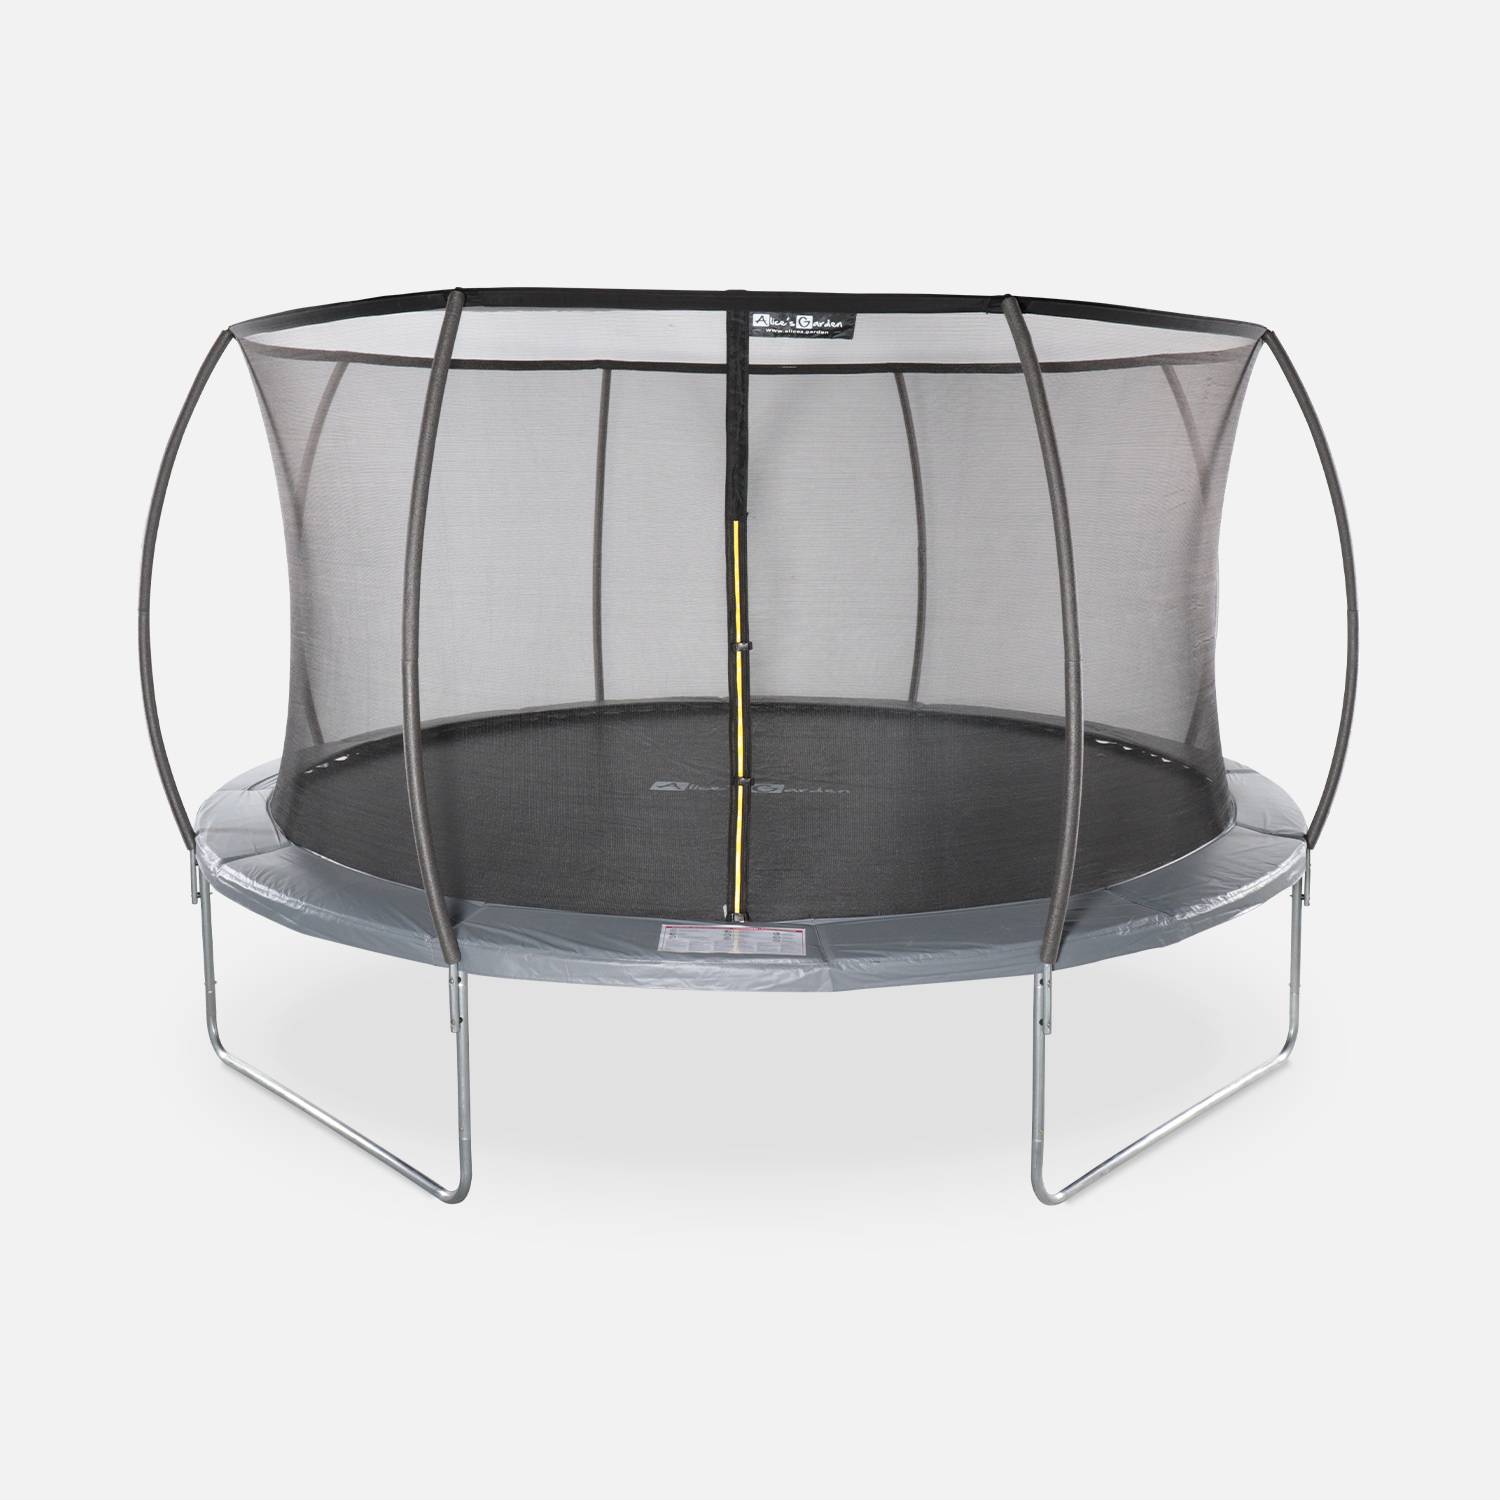 Cama elástica redonda 430 cm gris con red de seguridad interna - Venus INNER - Nuevo modelo - cama elástica de jardín 4,30 m 430  cm | Calidad PRO. | Normas de la UE. Photo1